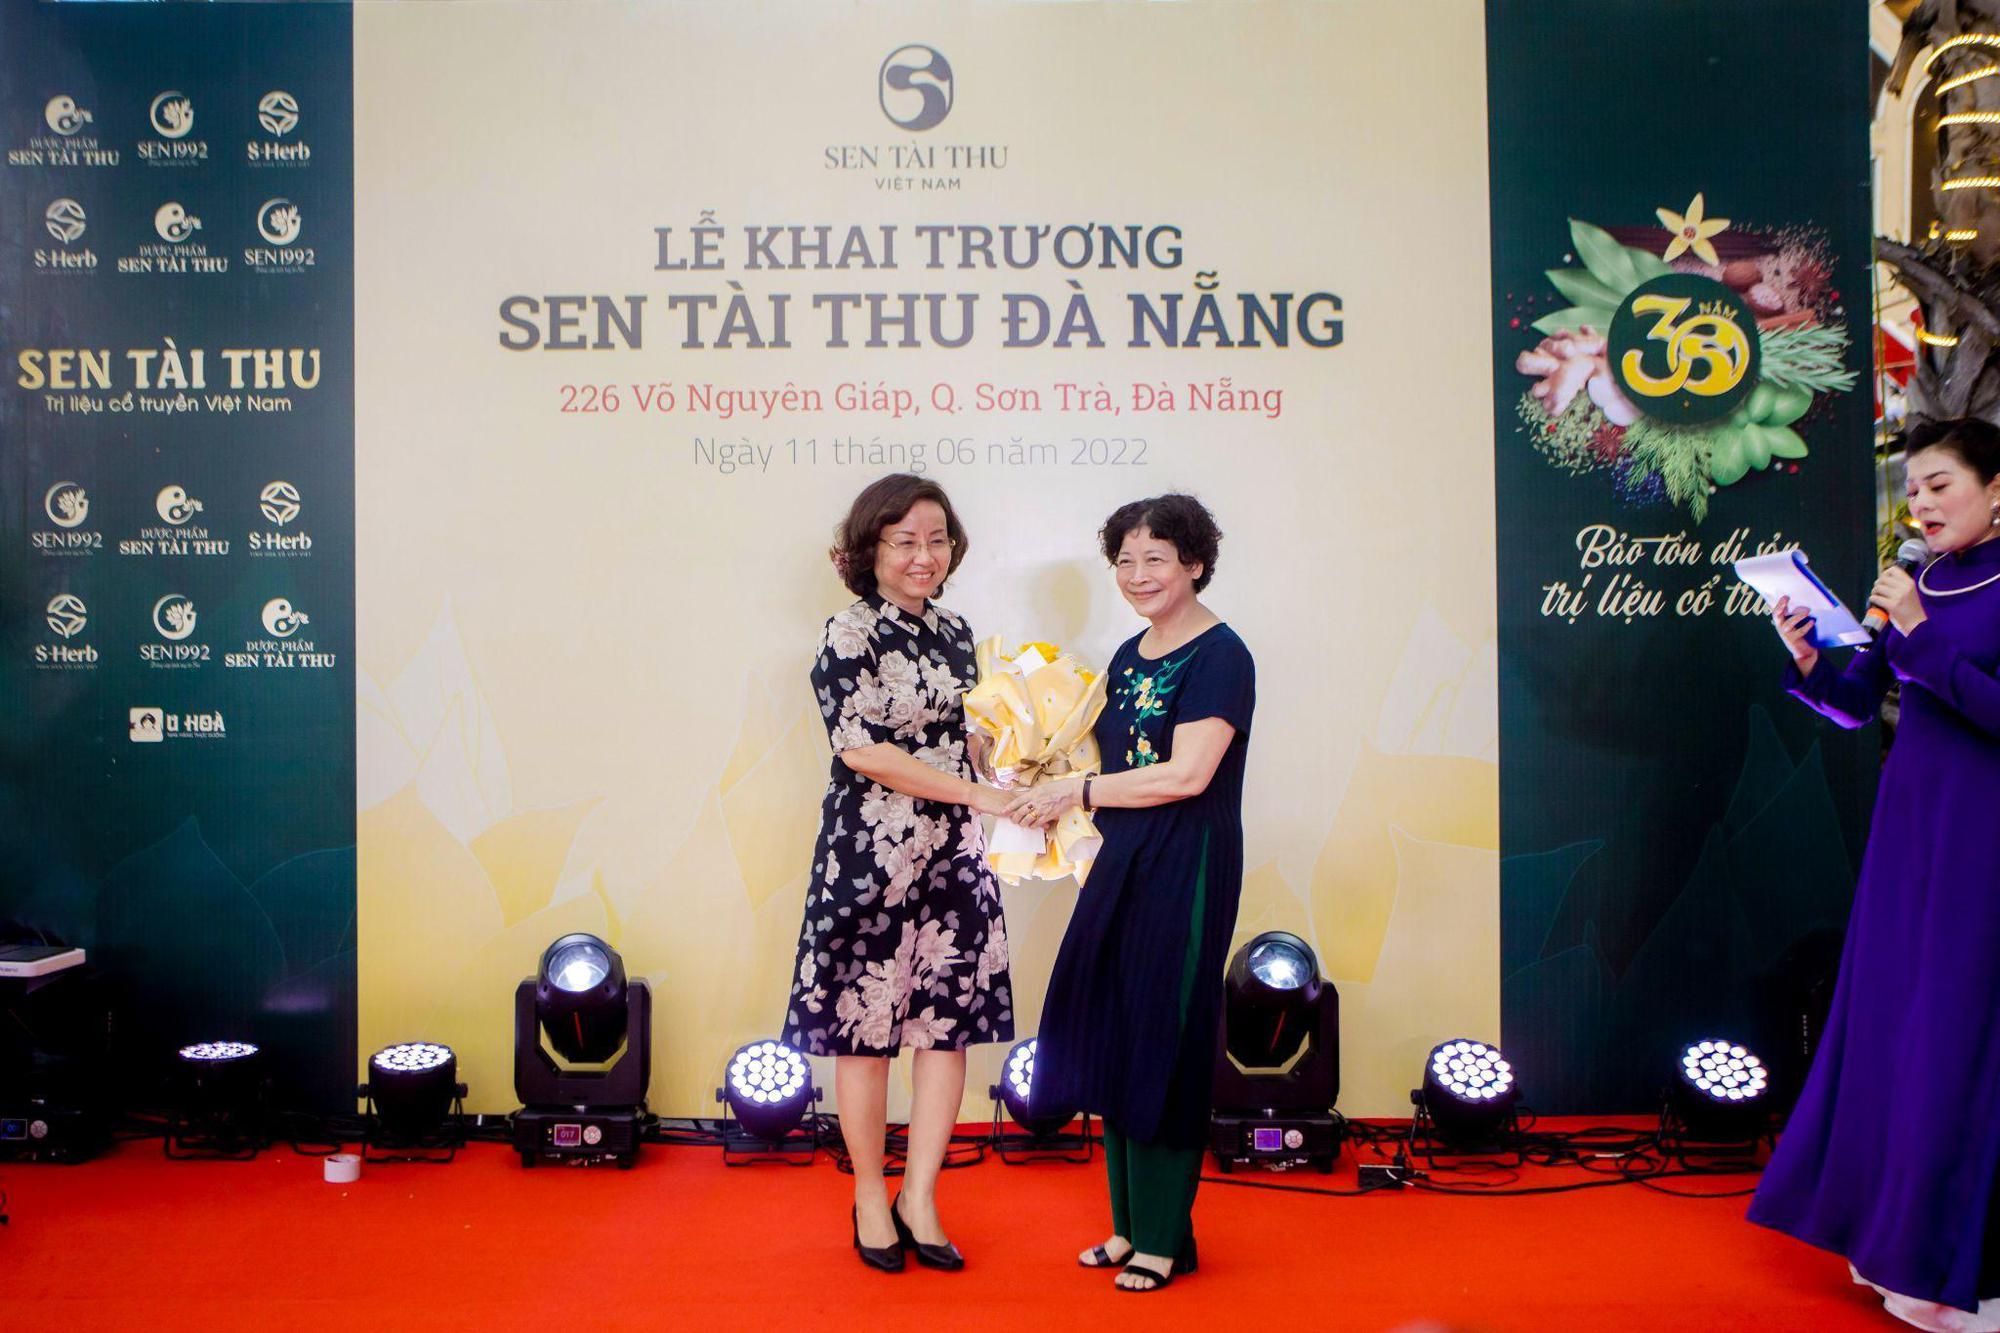 Sen Tài Thu: Khai trương cơ sở chữa bệnh gia truyền Việt Nam tại Đà Nẵng - Ảnh 4.